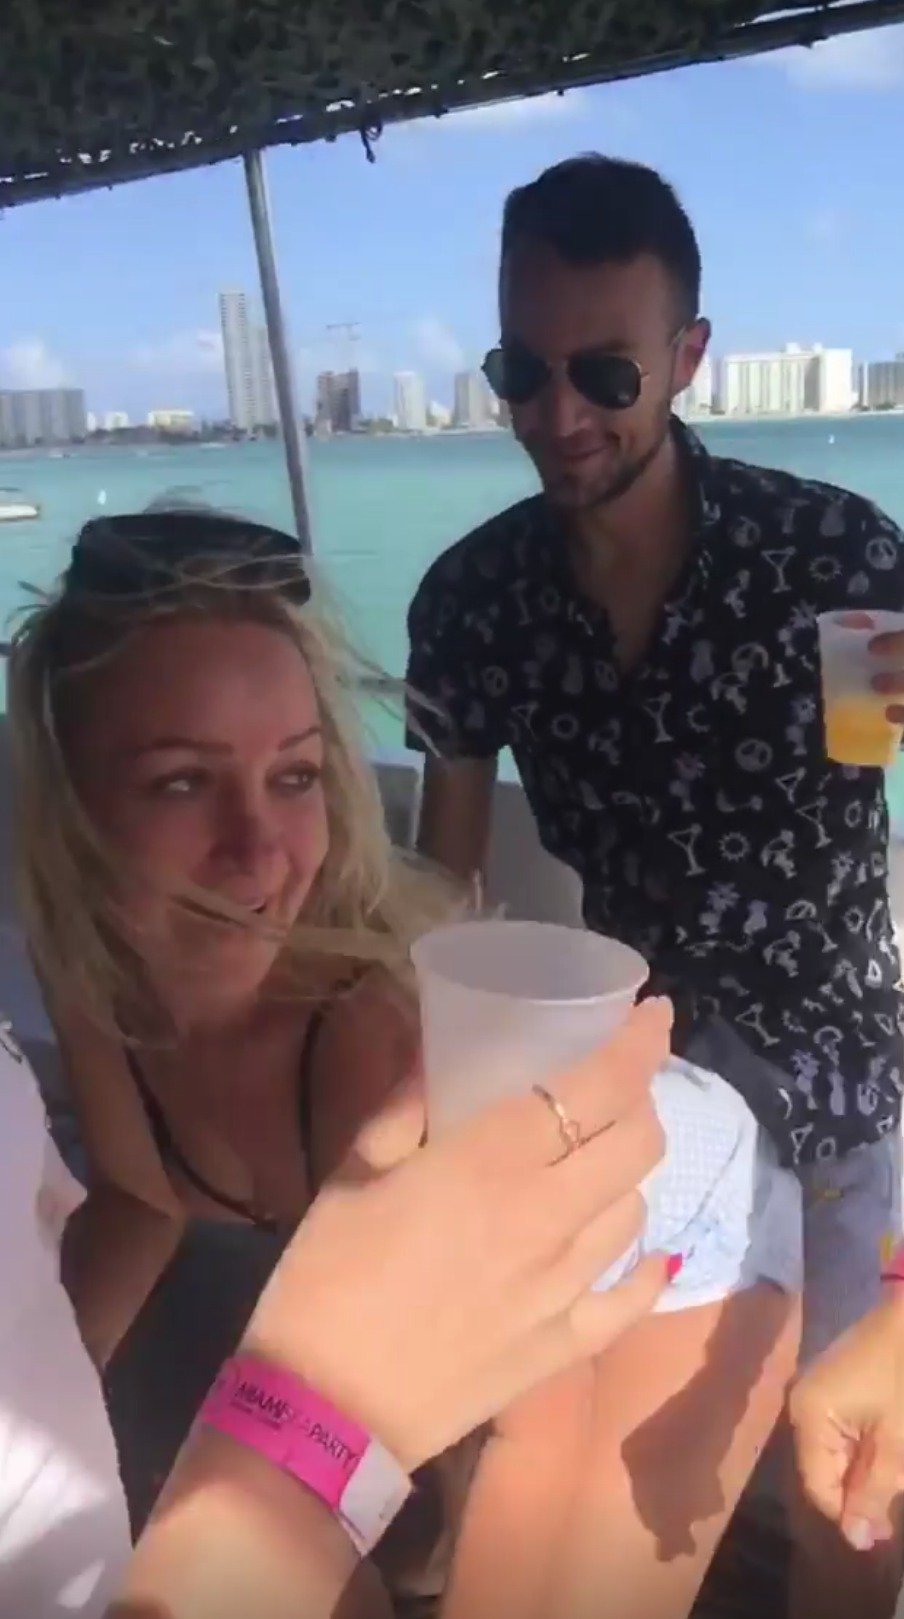 Simona si s novou kamarádkou užívá divoké mejdany v Miami.